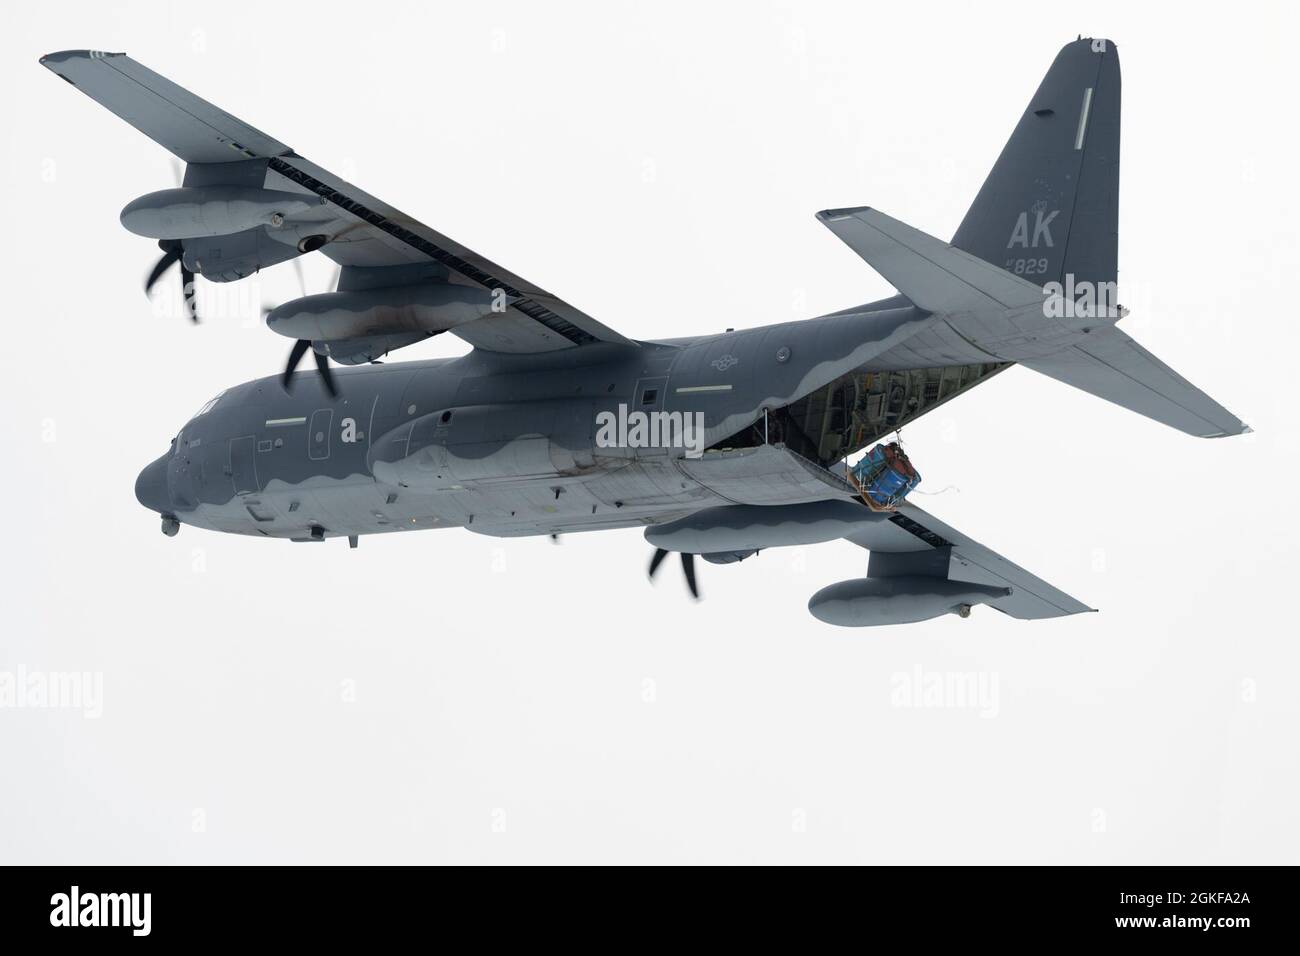 Un roi de combat HC-130J de la Garde nationale aérienne de l'Alaska exploité par des aviateurs du 211e Escadron de sauvetage larme un système de livraison de conteneurs lors d'opérations aériennes au-dessus de la zone de chute de Malemute à la base conjointe Elmendorf-Richardson (Alaska), le 7 avril 2021. Le HC-130J combat King II est une version spécialement modifiée et améliorée du très connu C-130 Hercules. Il peut effectuer des opérations de récupération du personnel, des missions de recherche et de sauvetage, ainsi que des missions de ravitaillement en vol par hélicoptère aérien et de ravitaillement au sol. Banque D'Images